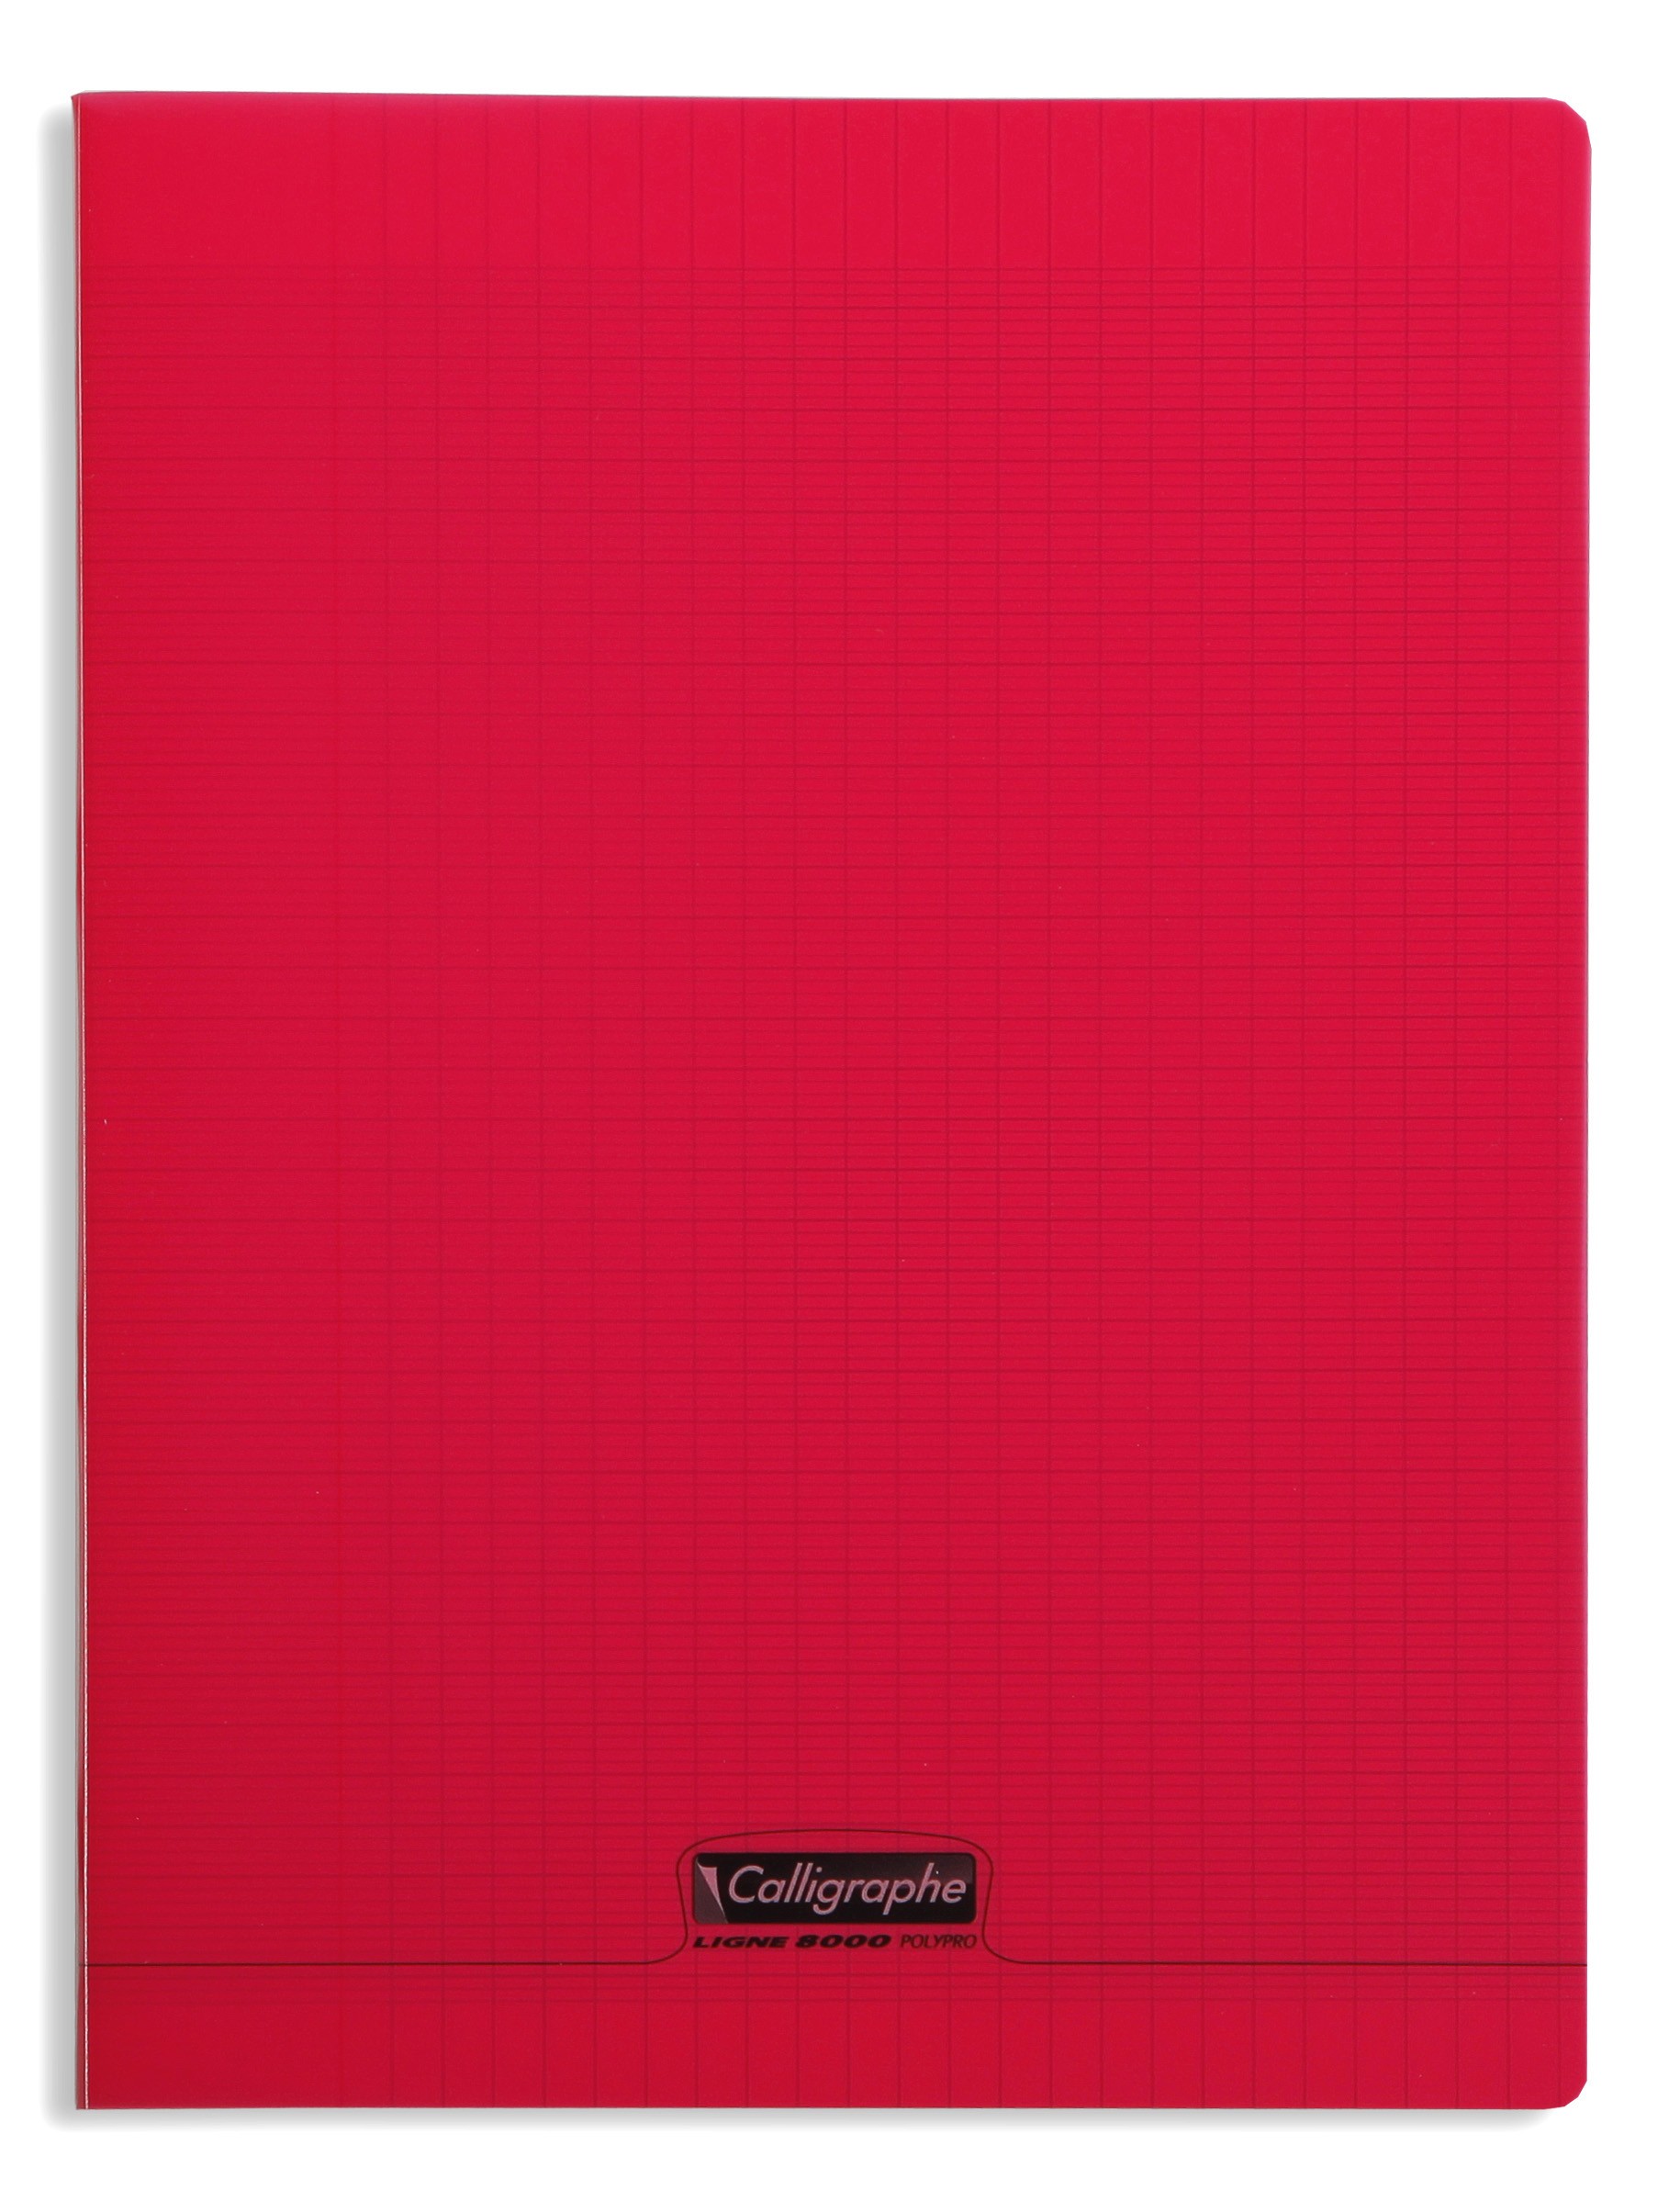 Cahier polypro Calligraphe grand format 24x32 48p grands carreaux (séyès) -  rouge